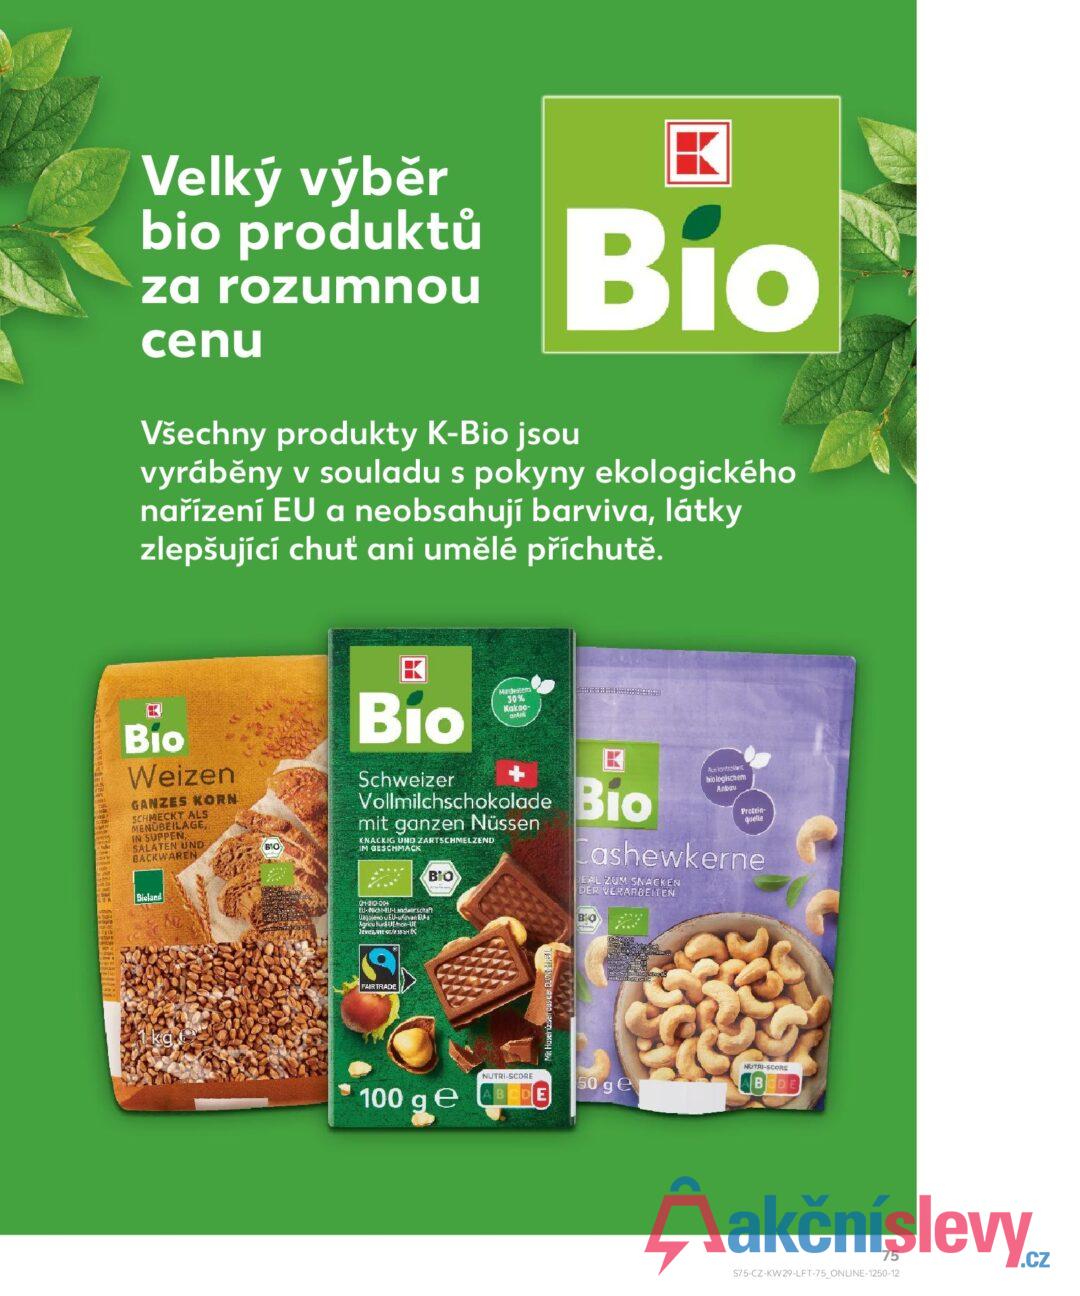 Velký výběr bio produktů za rozumnou cenu Všechny produkty K-Bio jsou Bio vyráběny v souladu s pokyny ekologického nařízení EU a neobsahují barviva, látky zlepšující chuť ani umělé příchutě. Bio Weizen GANZES KORN SCHMECKT ALS MENÜBEILAGE, IN SUPPEN, SALATEN UND BACKWAREN Bioland BIO Bio Schweizer Mindestens 30% Kakao- antil Vollmilchschokolade Bio mit ganzen Nüssen KNACKIG UND ZARTSCHMELZEND IM GESCHMACK CH-310-004 EL-Nicht-EU-Landwirtschaft Замедлие от/извън ΒΙΟ Aus kontrollerd biologischem Anbau Protein- quelle Cashewkerne DEAL ZUM SNACKEN DER VERARBEITEN BO FAIRTRADE Mit Haselnüssen aus der EU/Nin 1 kg 100 ge NUTRI-SCORE DE 50 ge NUTRI-SCORE BODE 75 S75-CZ-KW29-LFT-75_ONLINE-1250-12